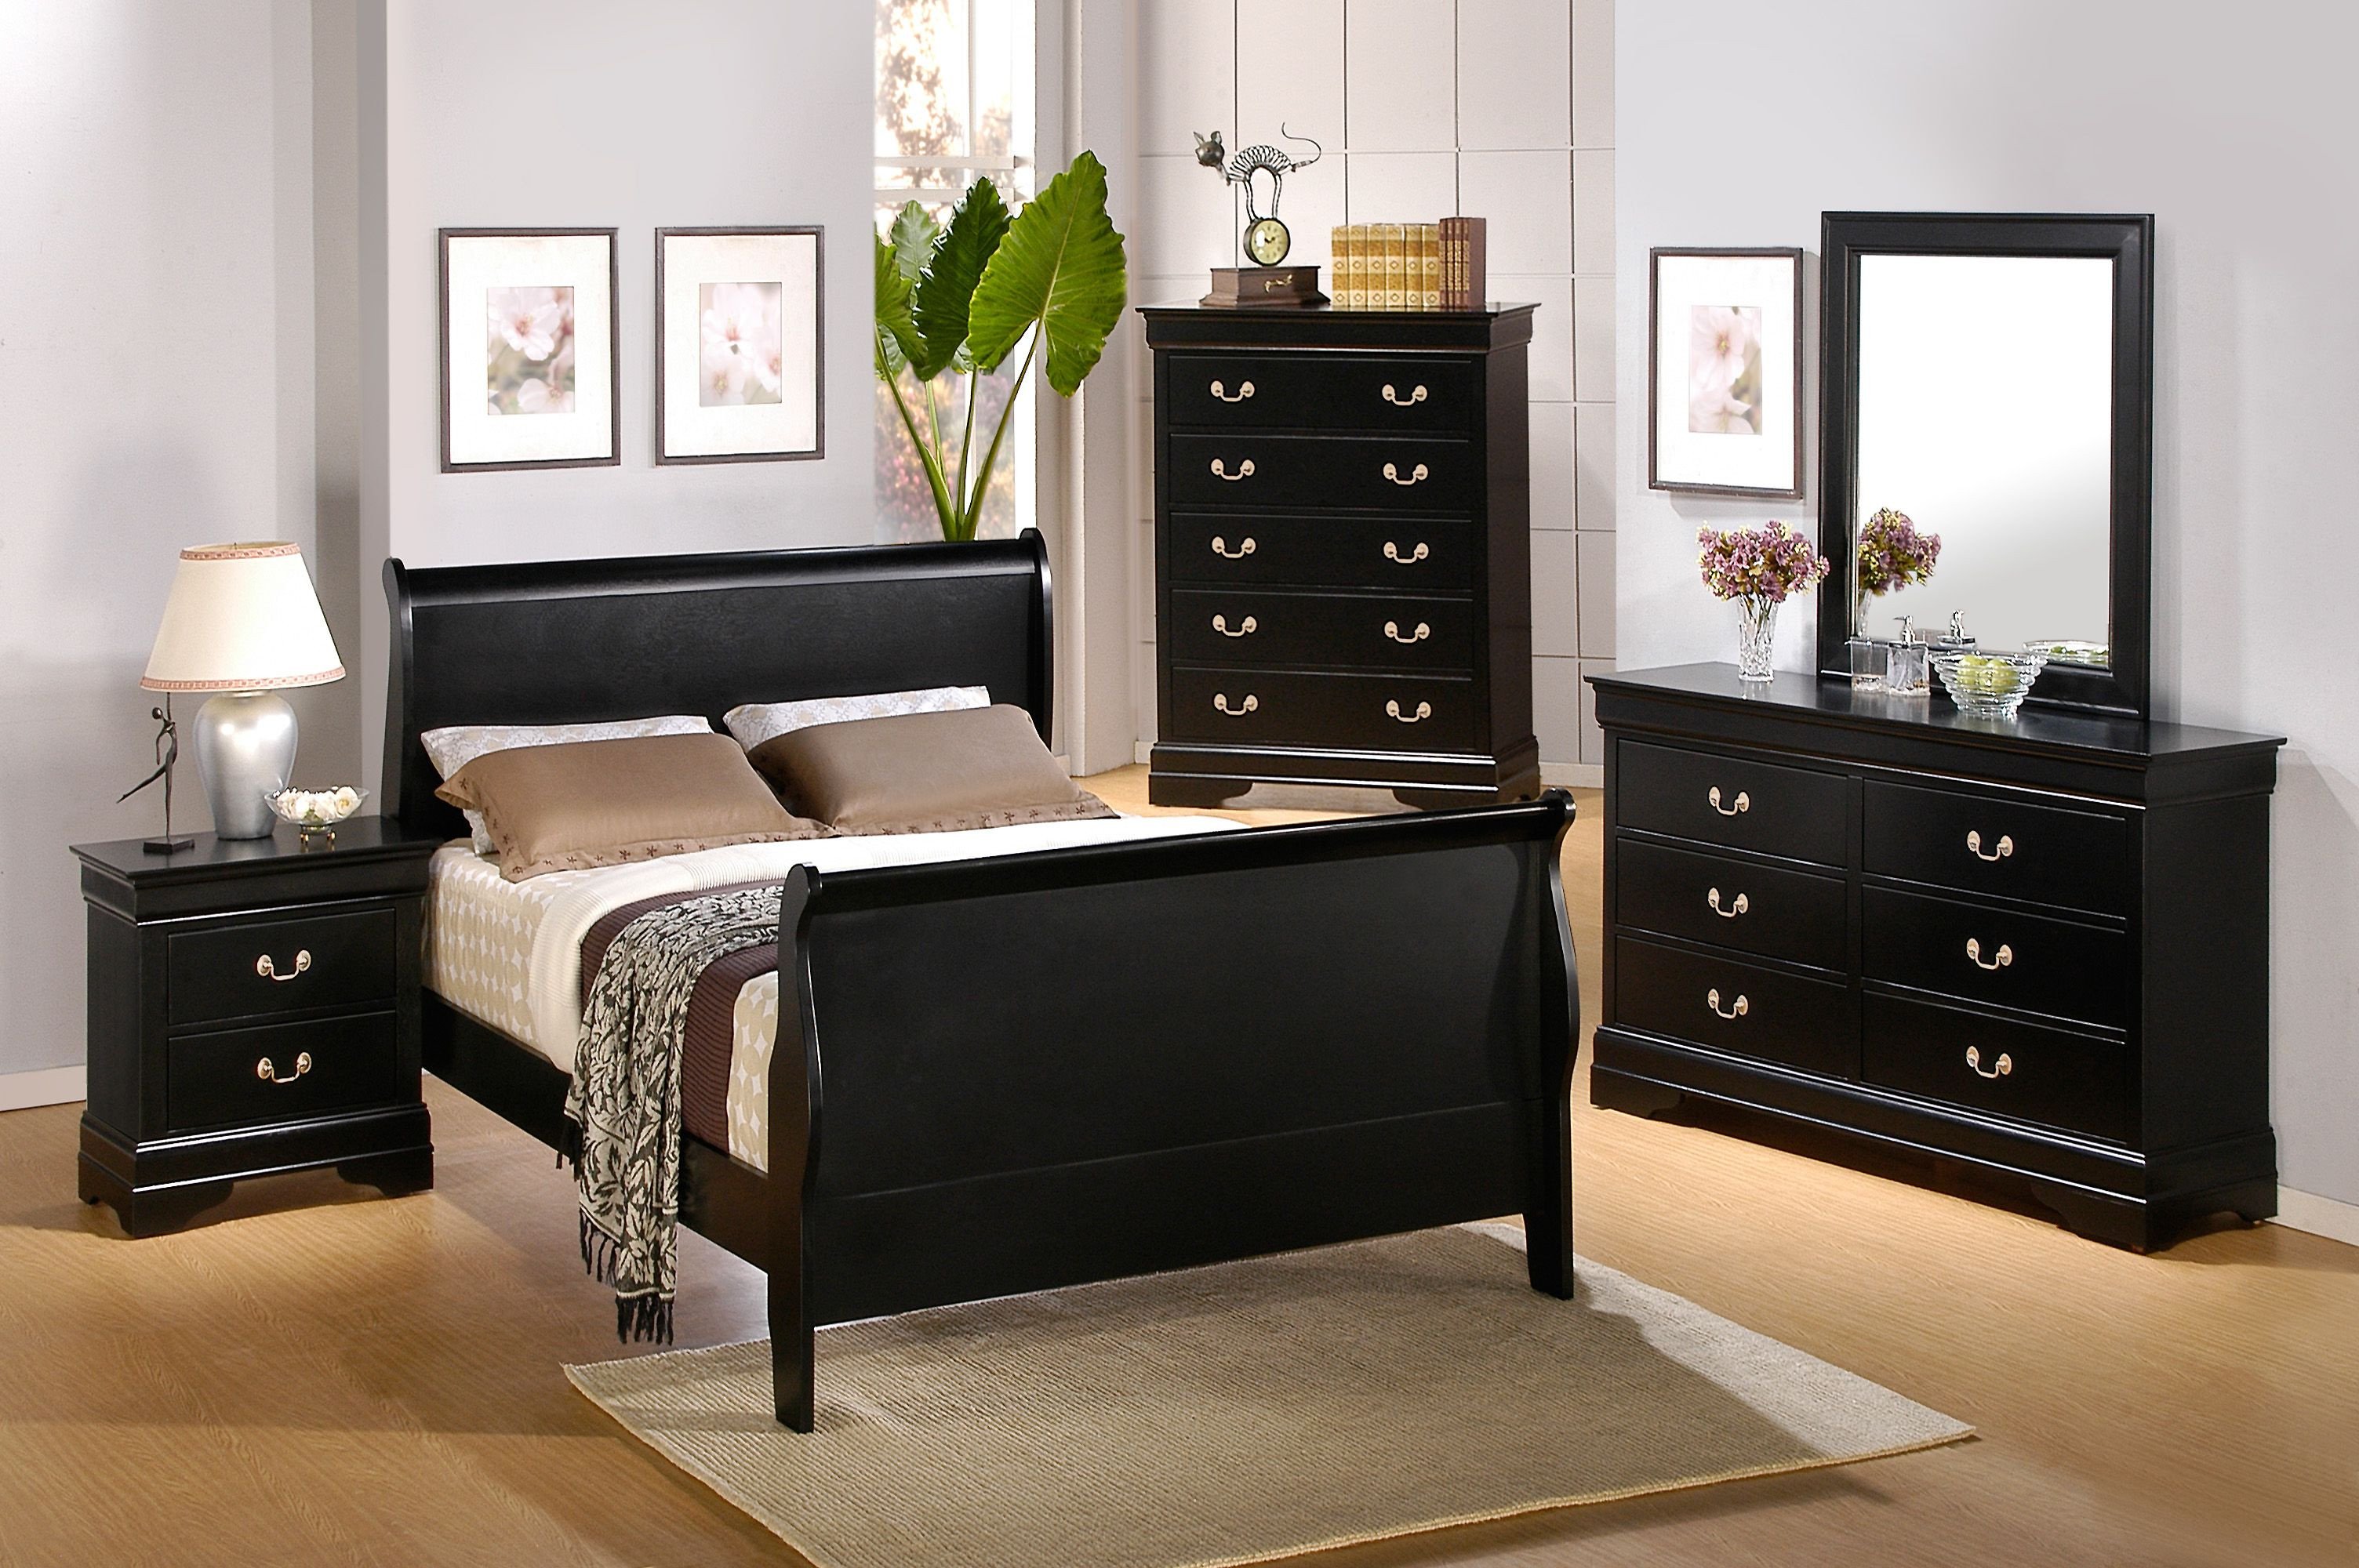 Black King Bedroom Set Elegant Bedroom Furniture Dressers Best for Homes